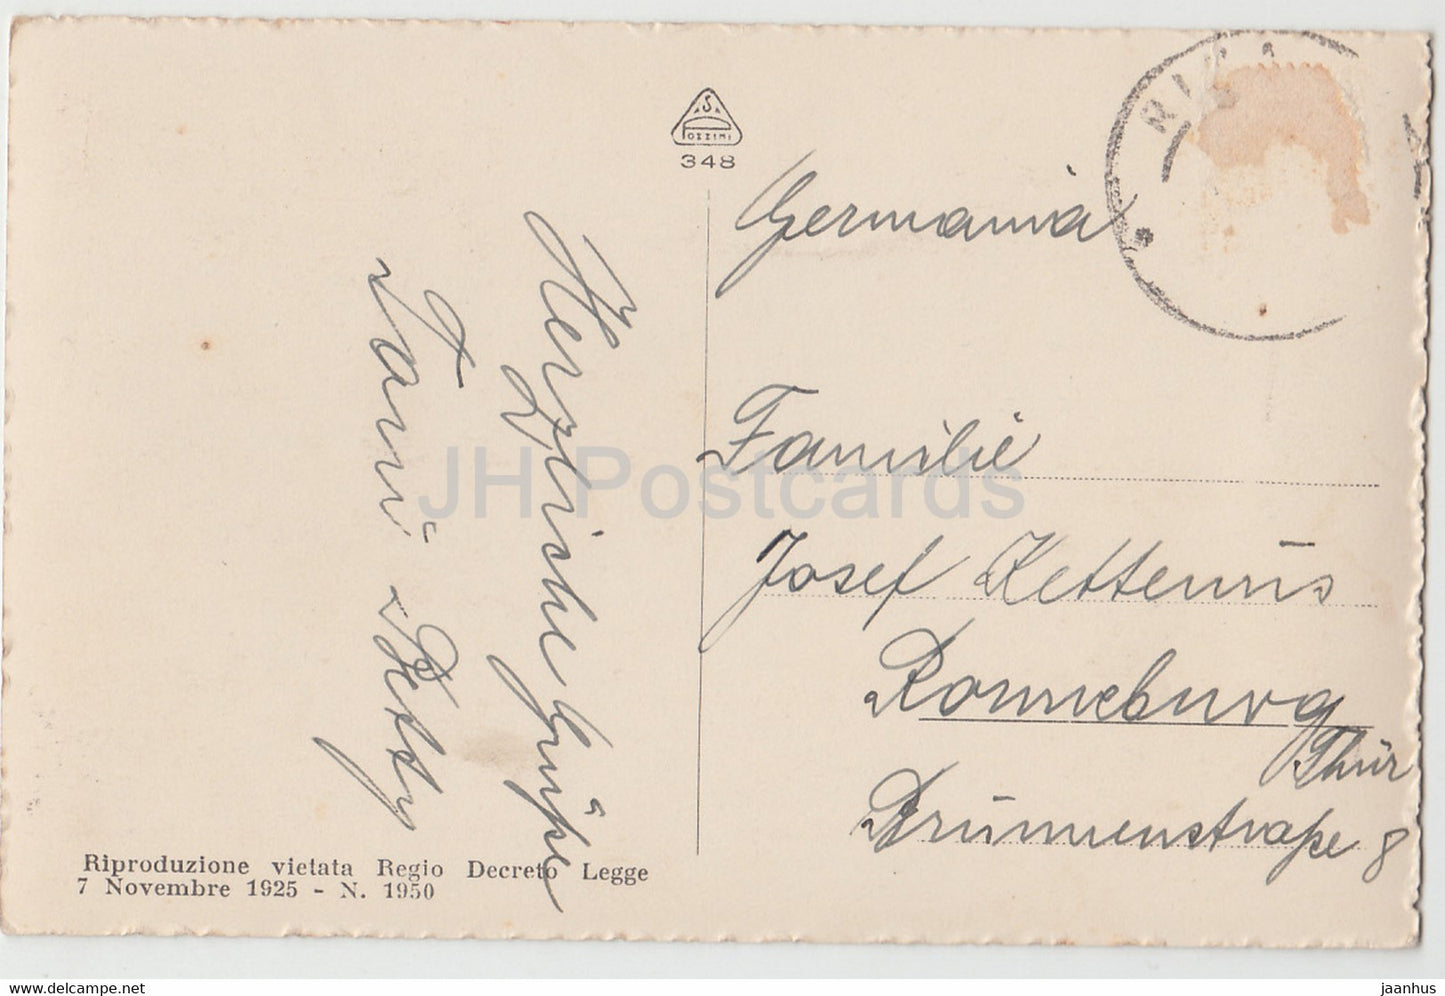 Riva - Gardasee - alte Postkarte - 1925 - Italien - gebraucht